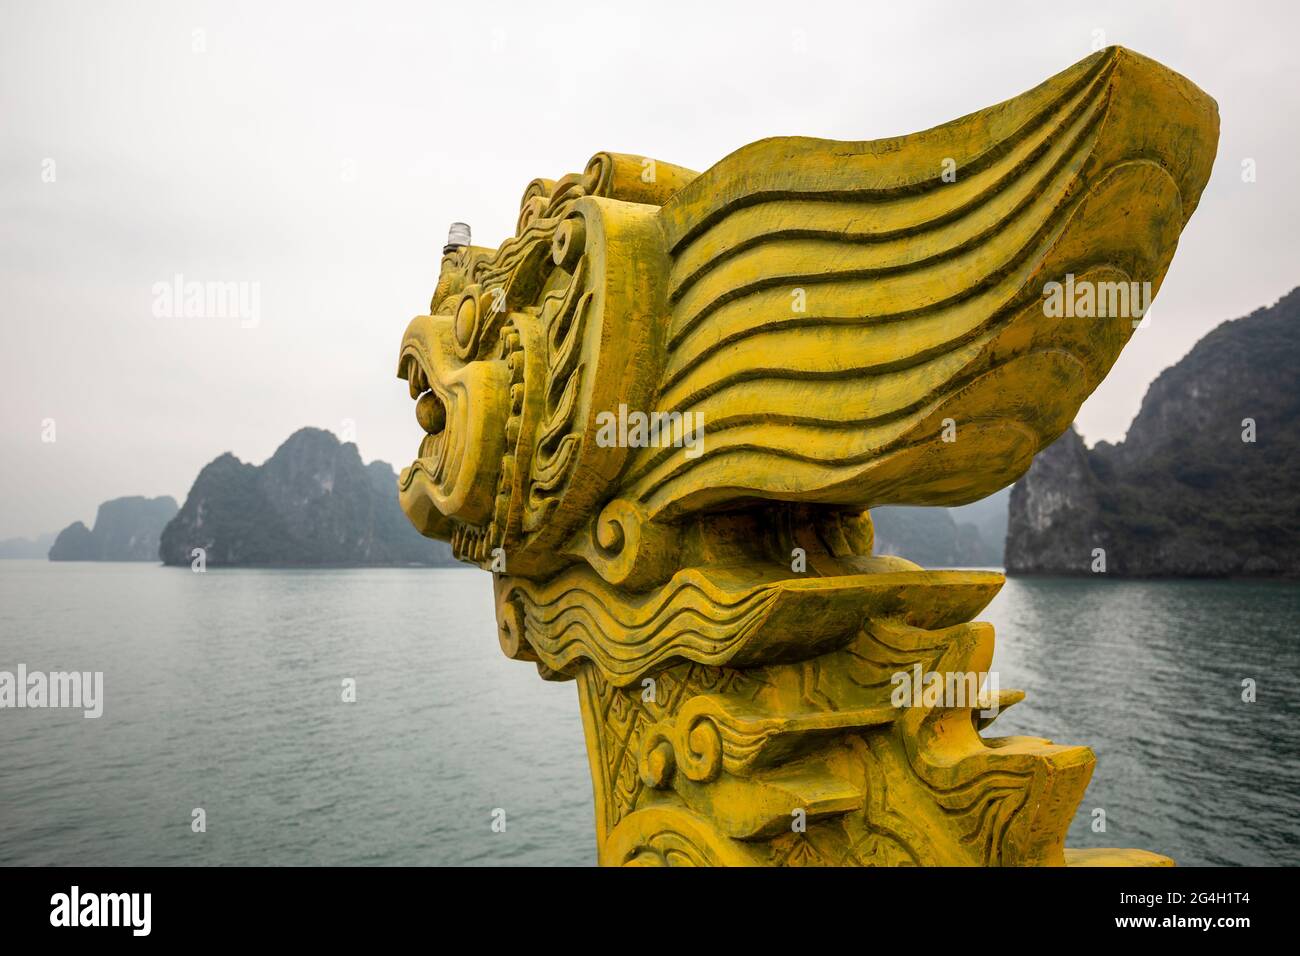 Galionsfiguren und Kalksteinformationen (Karst) des Bootes, Dragon Legend chinesischer Müll, Ha Long Bay, Vietnam Stockfoto